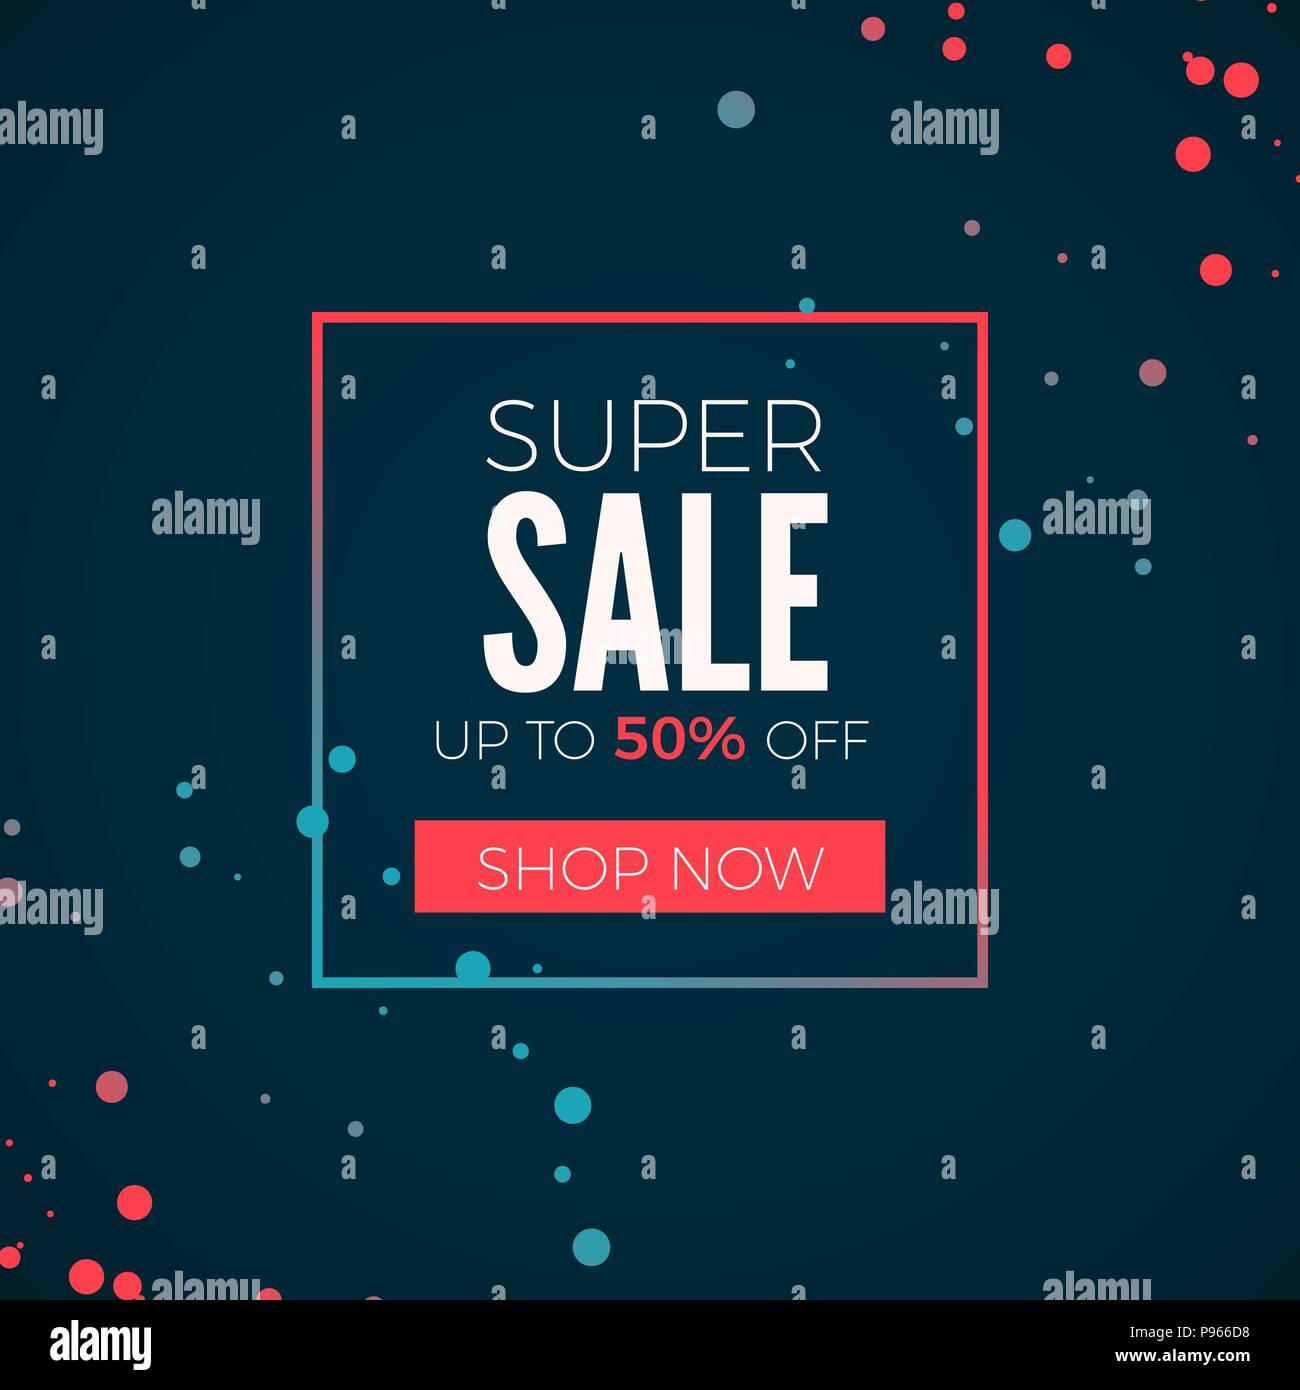 Super Sale Plakat. Kopf Super Sale im Rahmen mit batton Jetzt einkaufen. Bunte Web Banner. Vector Illustration Stock Vektor